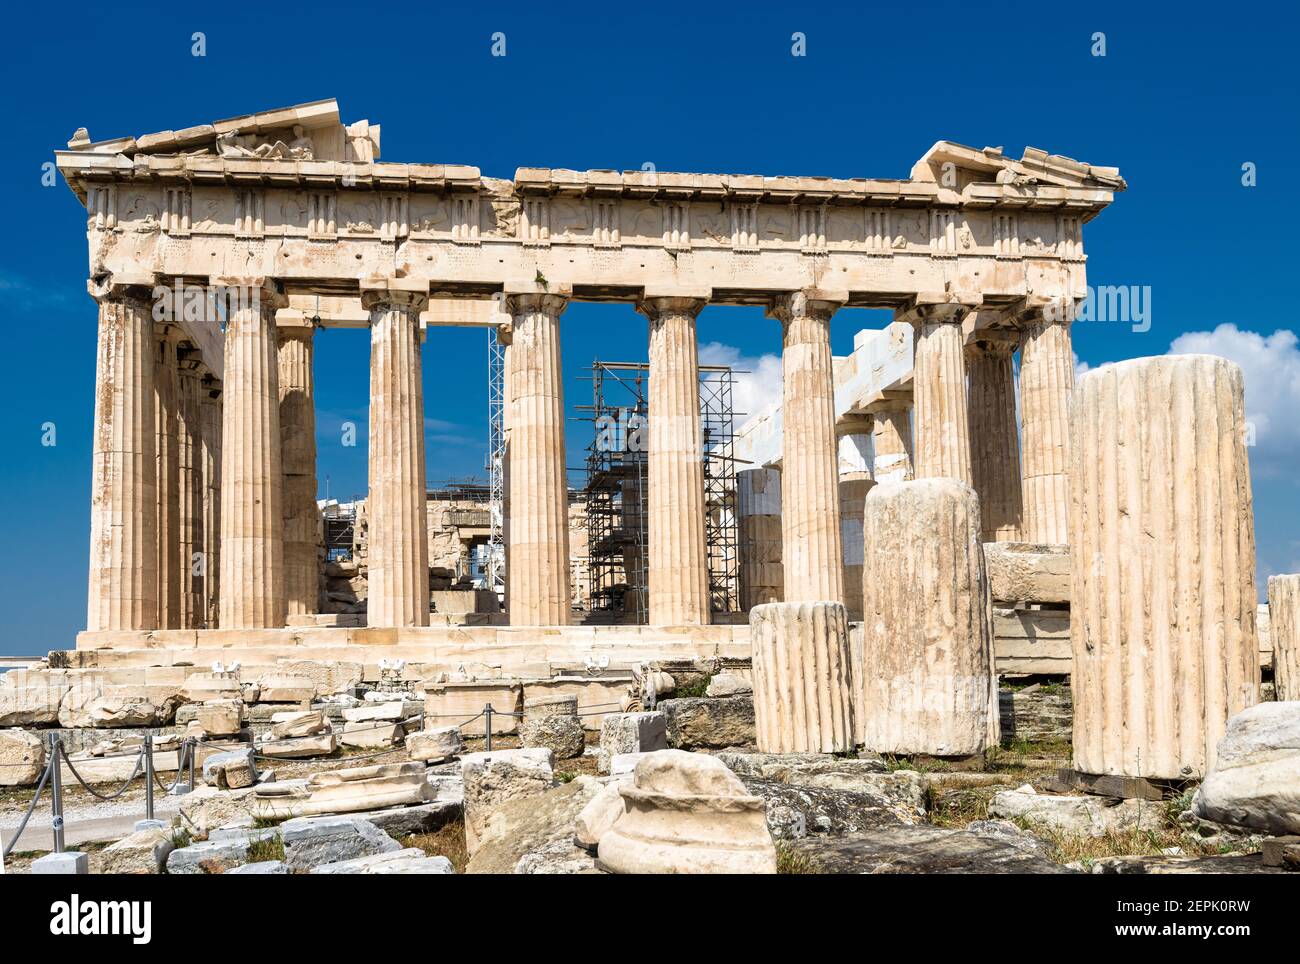 Parthenon Tempel auf Akropolis, Athen, Griechenland. Es ist das Wahrzeichen Athens. Ruinen des berühmten Gebäudes auf Akropolis Hügel, Antike griechische Architektur Stockfoto